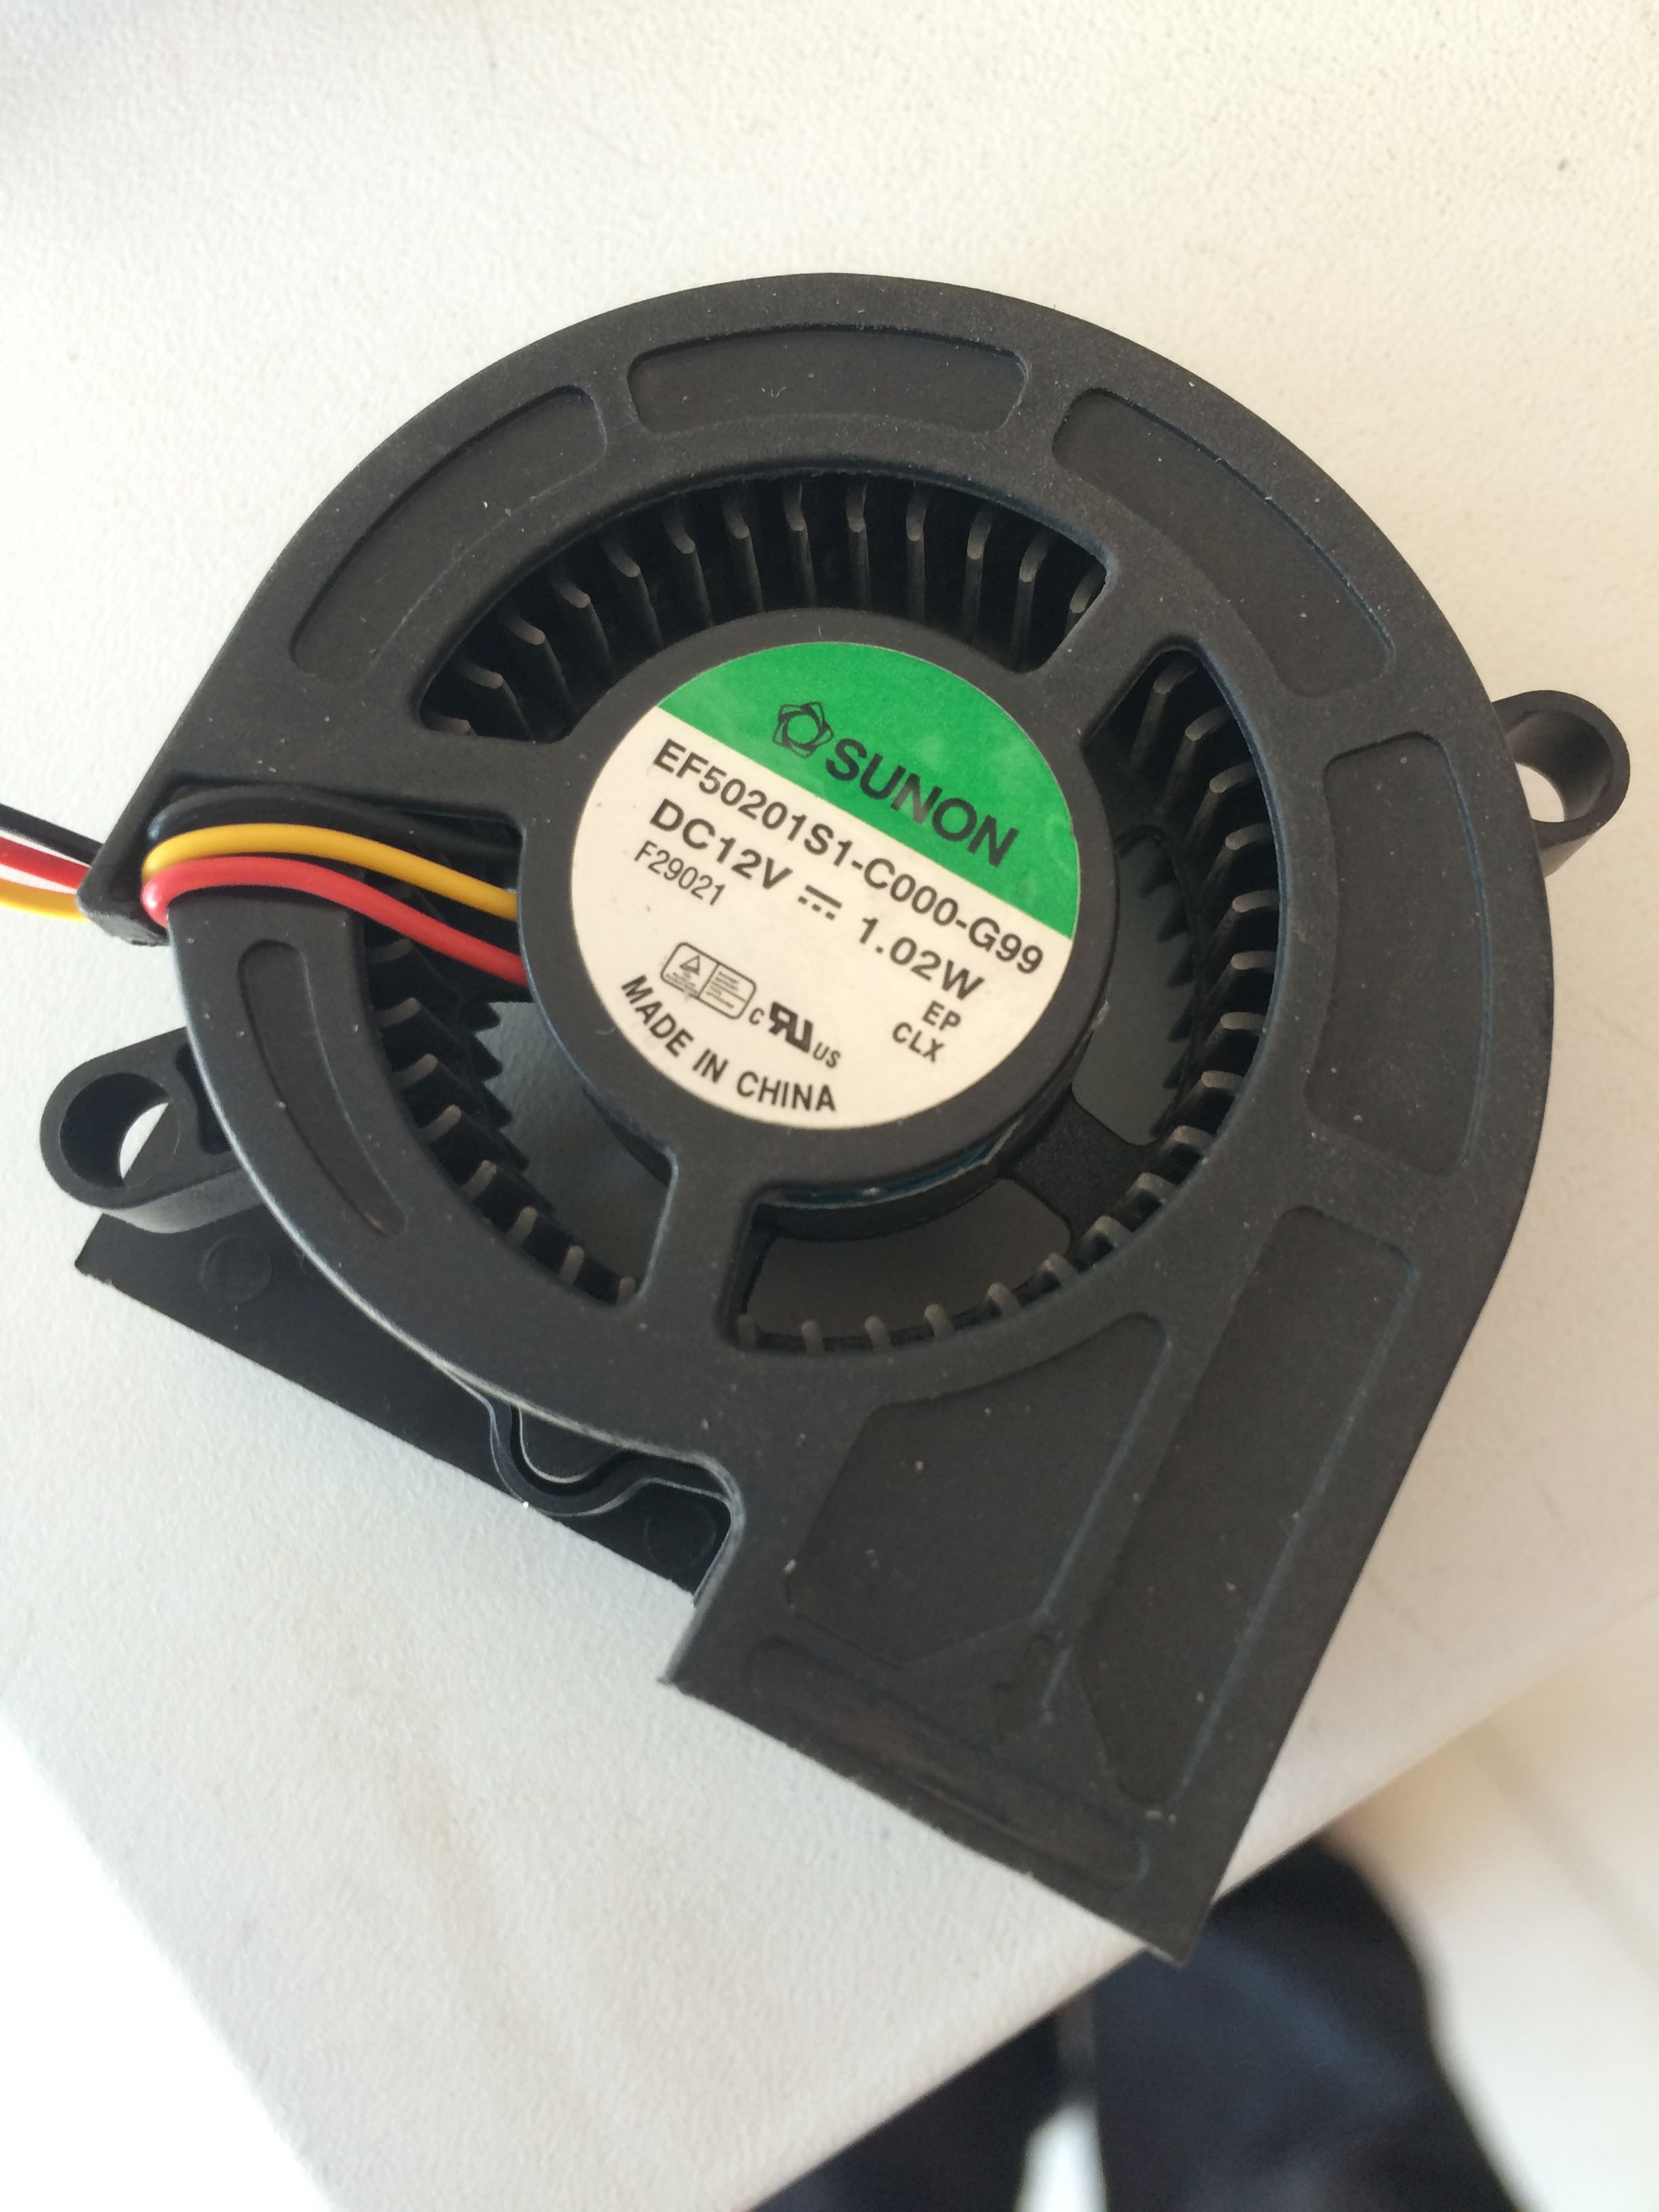 Optoma T761st SUNON EF50201S1-C000-F99 DC12V 1.02W 3pin 3Wire Projector Cooler Cooling Fan